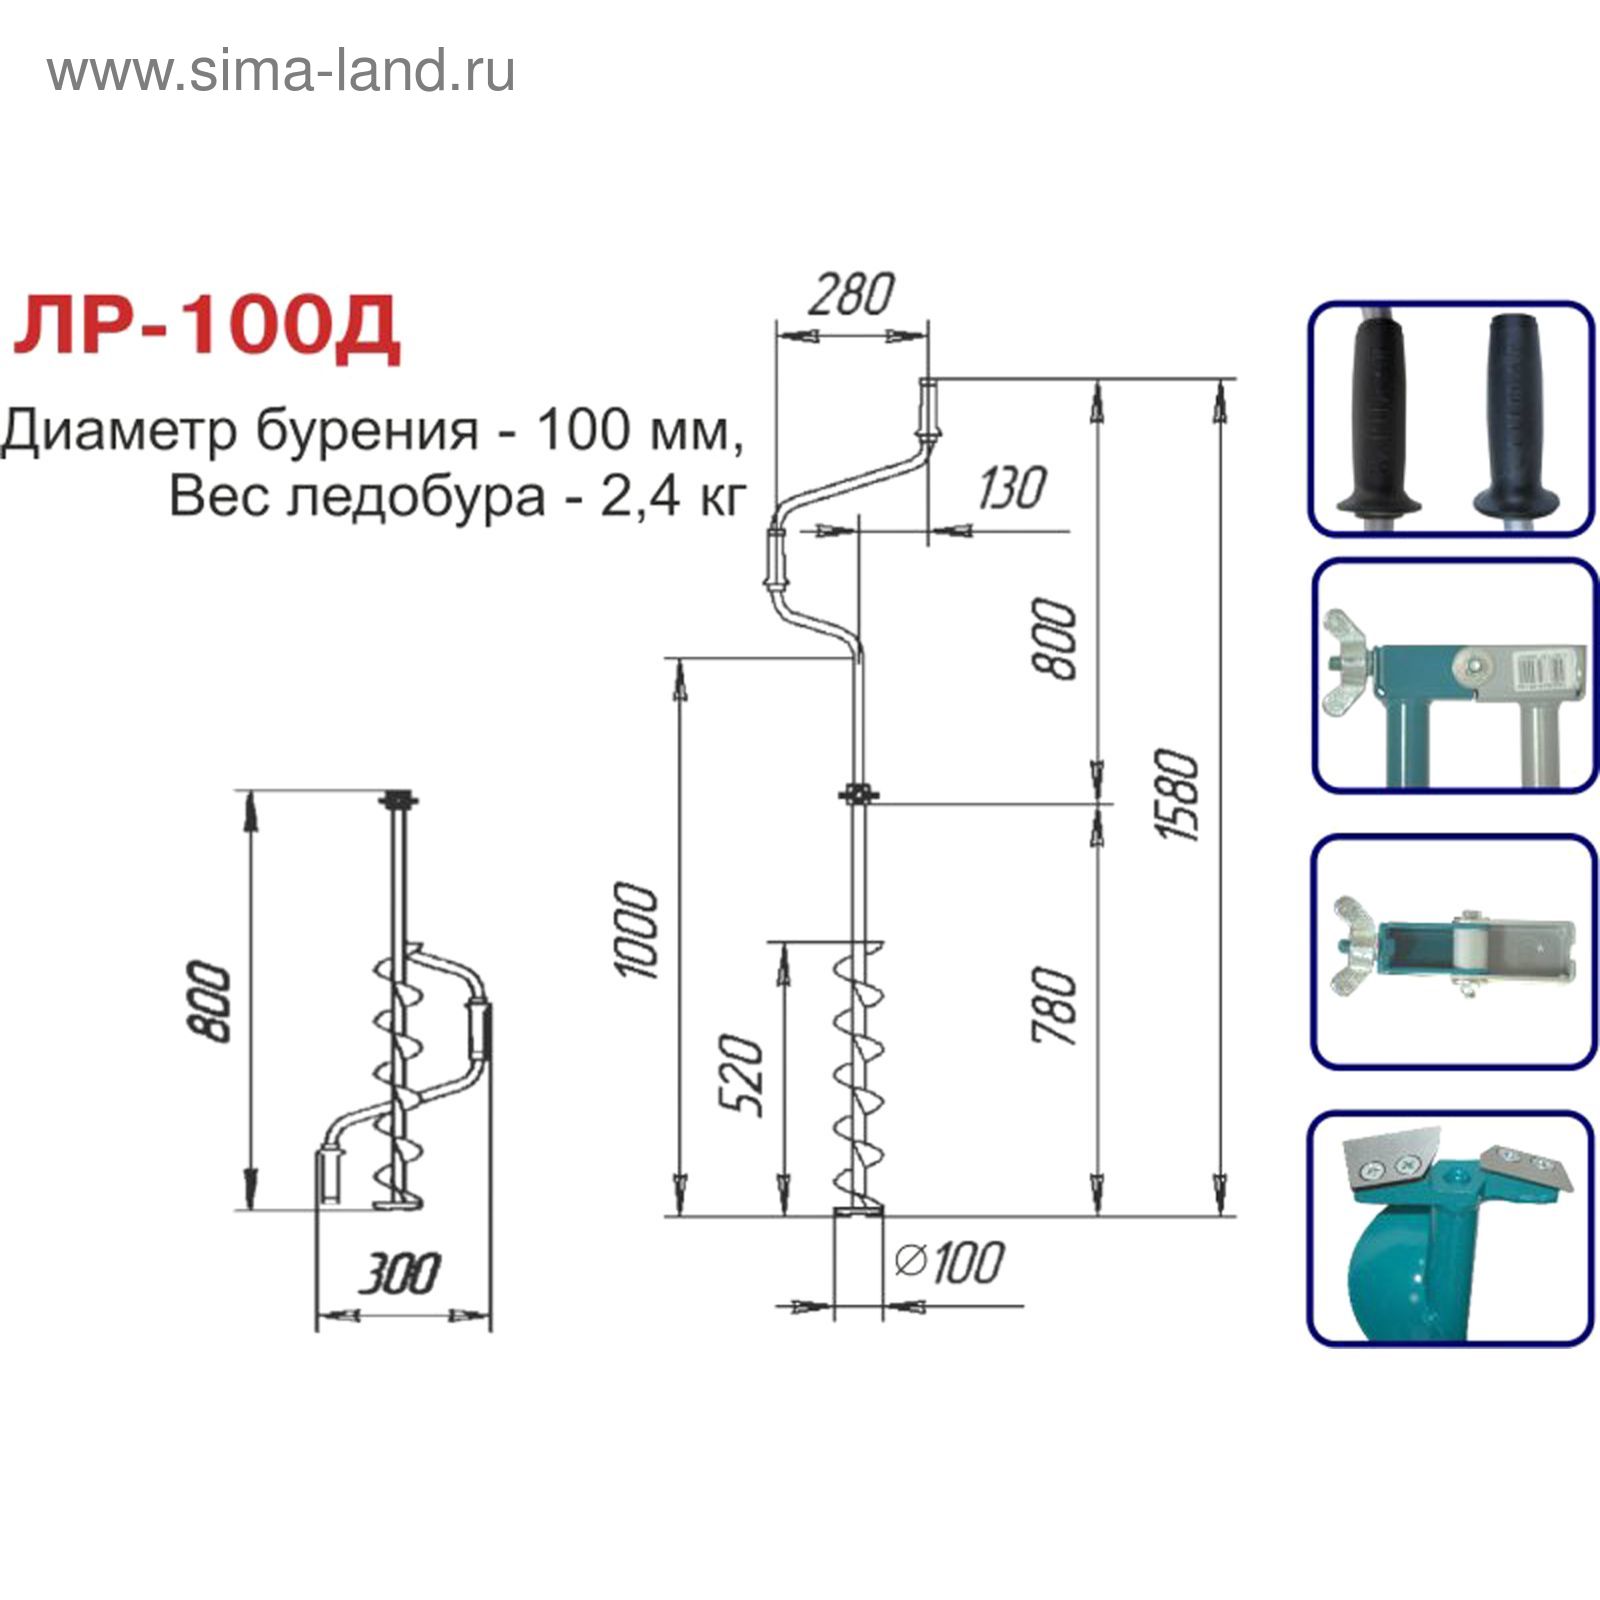 Ледобур двуручный ЛР-100Д